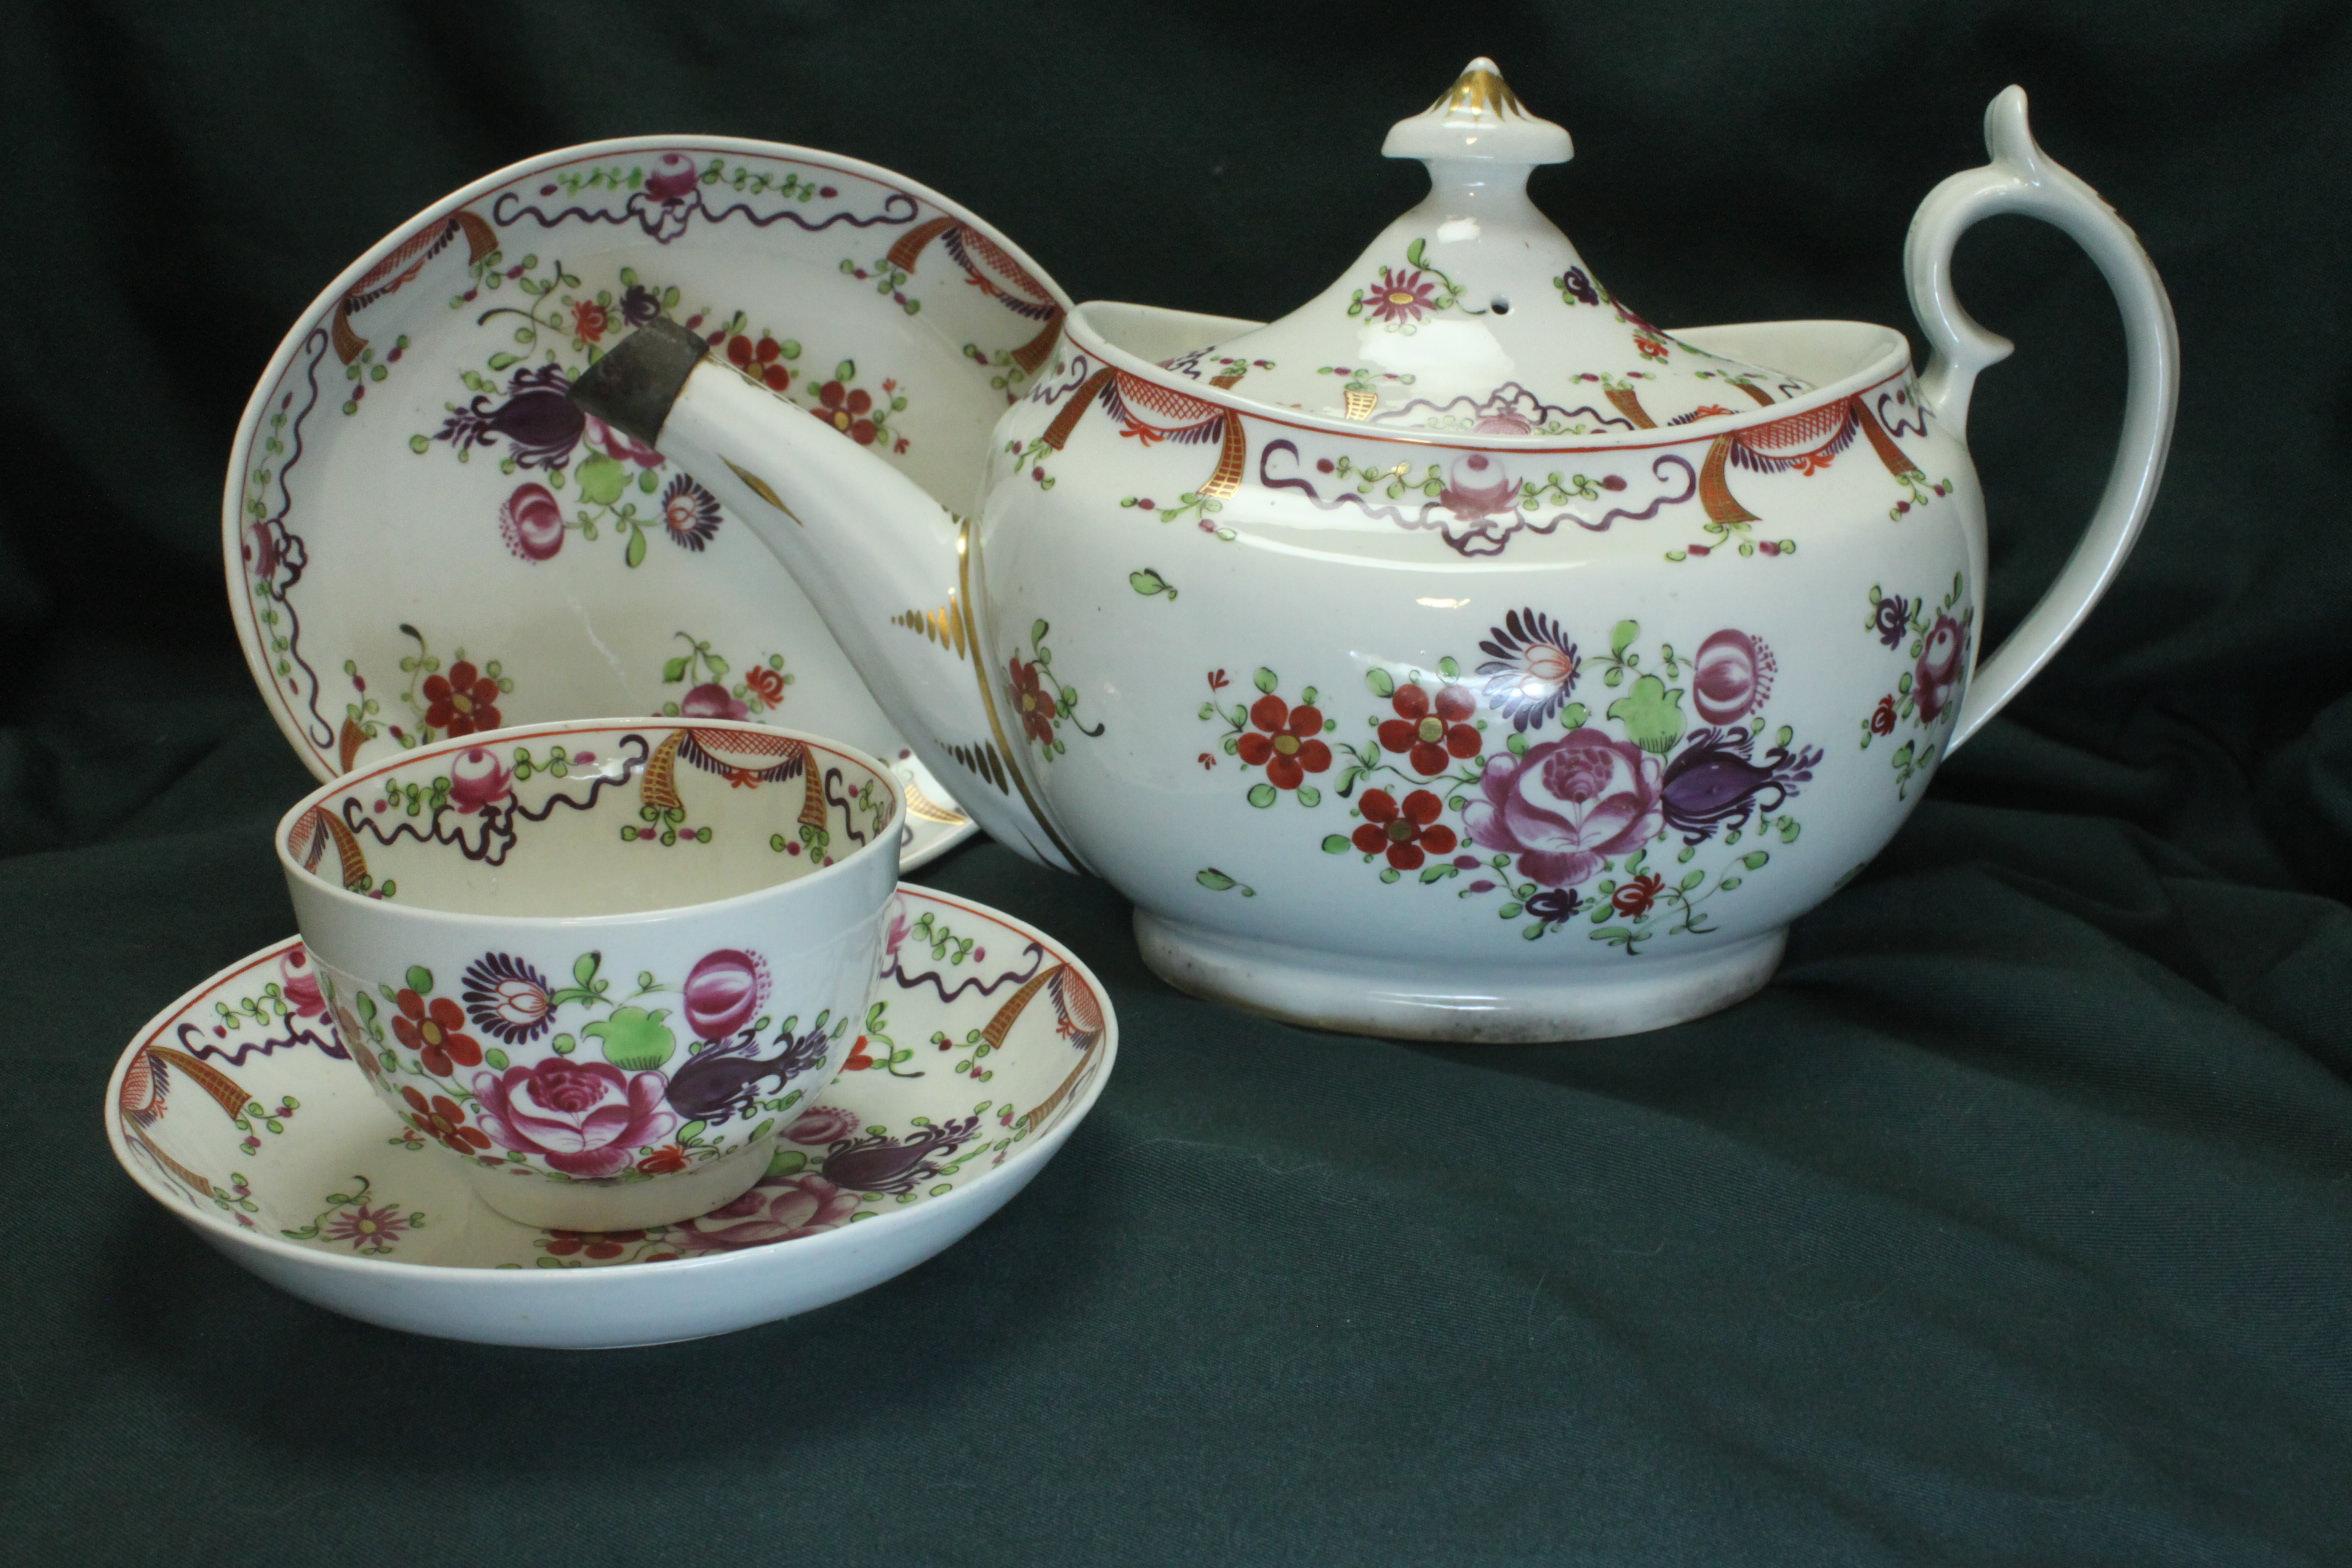 Ce service à thé en porcelaine de Chamberlain's Worcester, peint et doré à la main, se compose de 31 pièces : une théière et un support, une boîte à sucre à couvercle, un pot à lait, un bol à soupe, deux assiettes à gâteau, douze bols à thé et douze